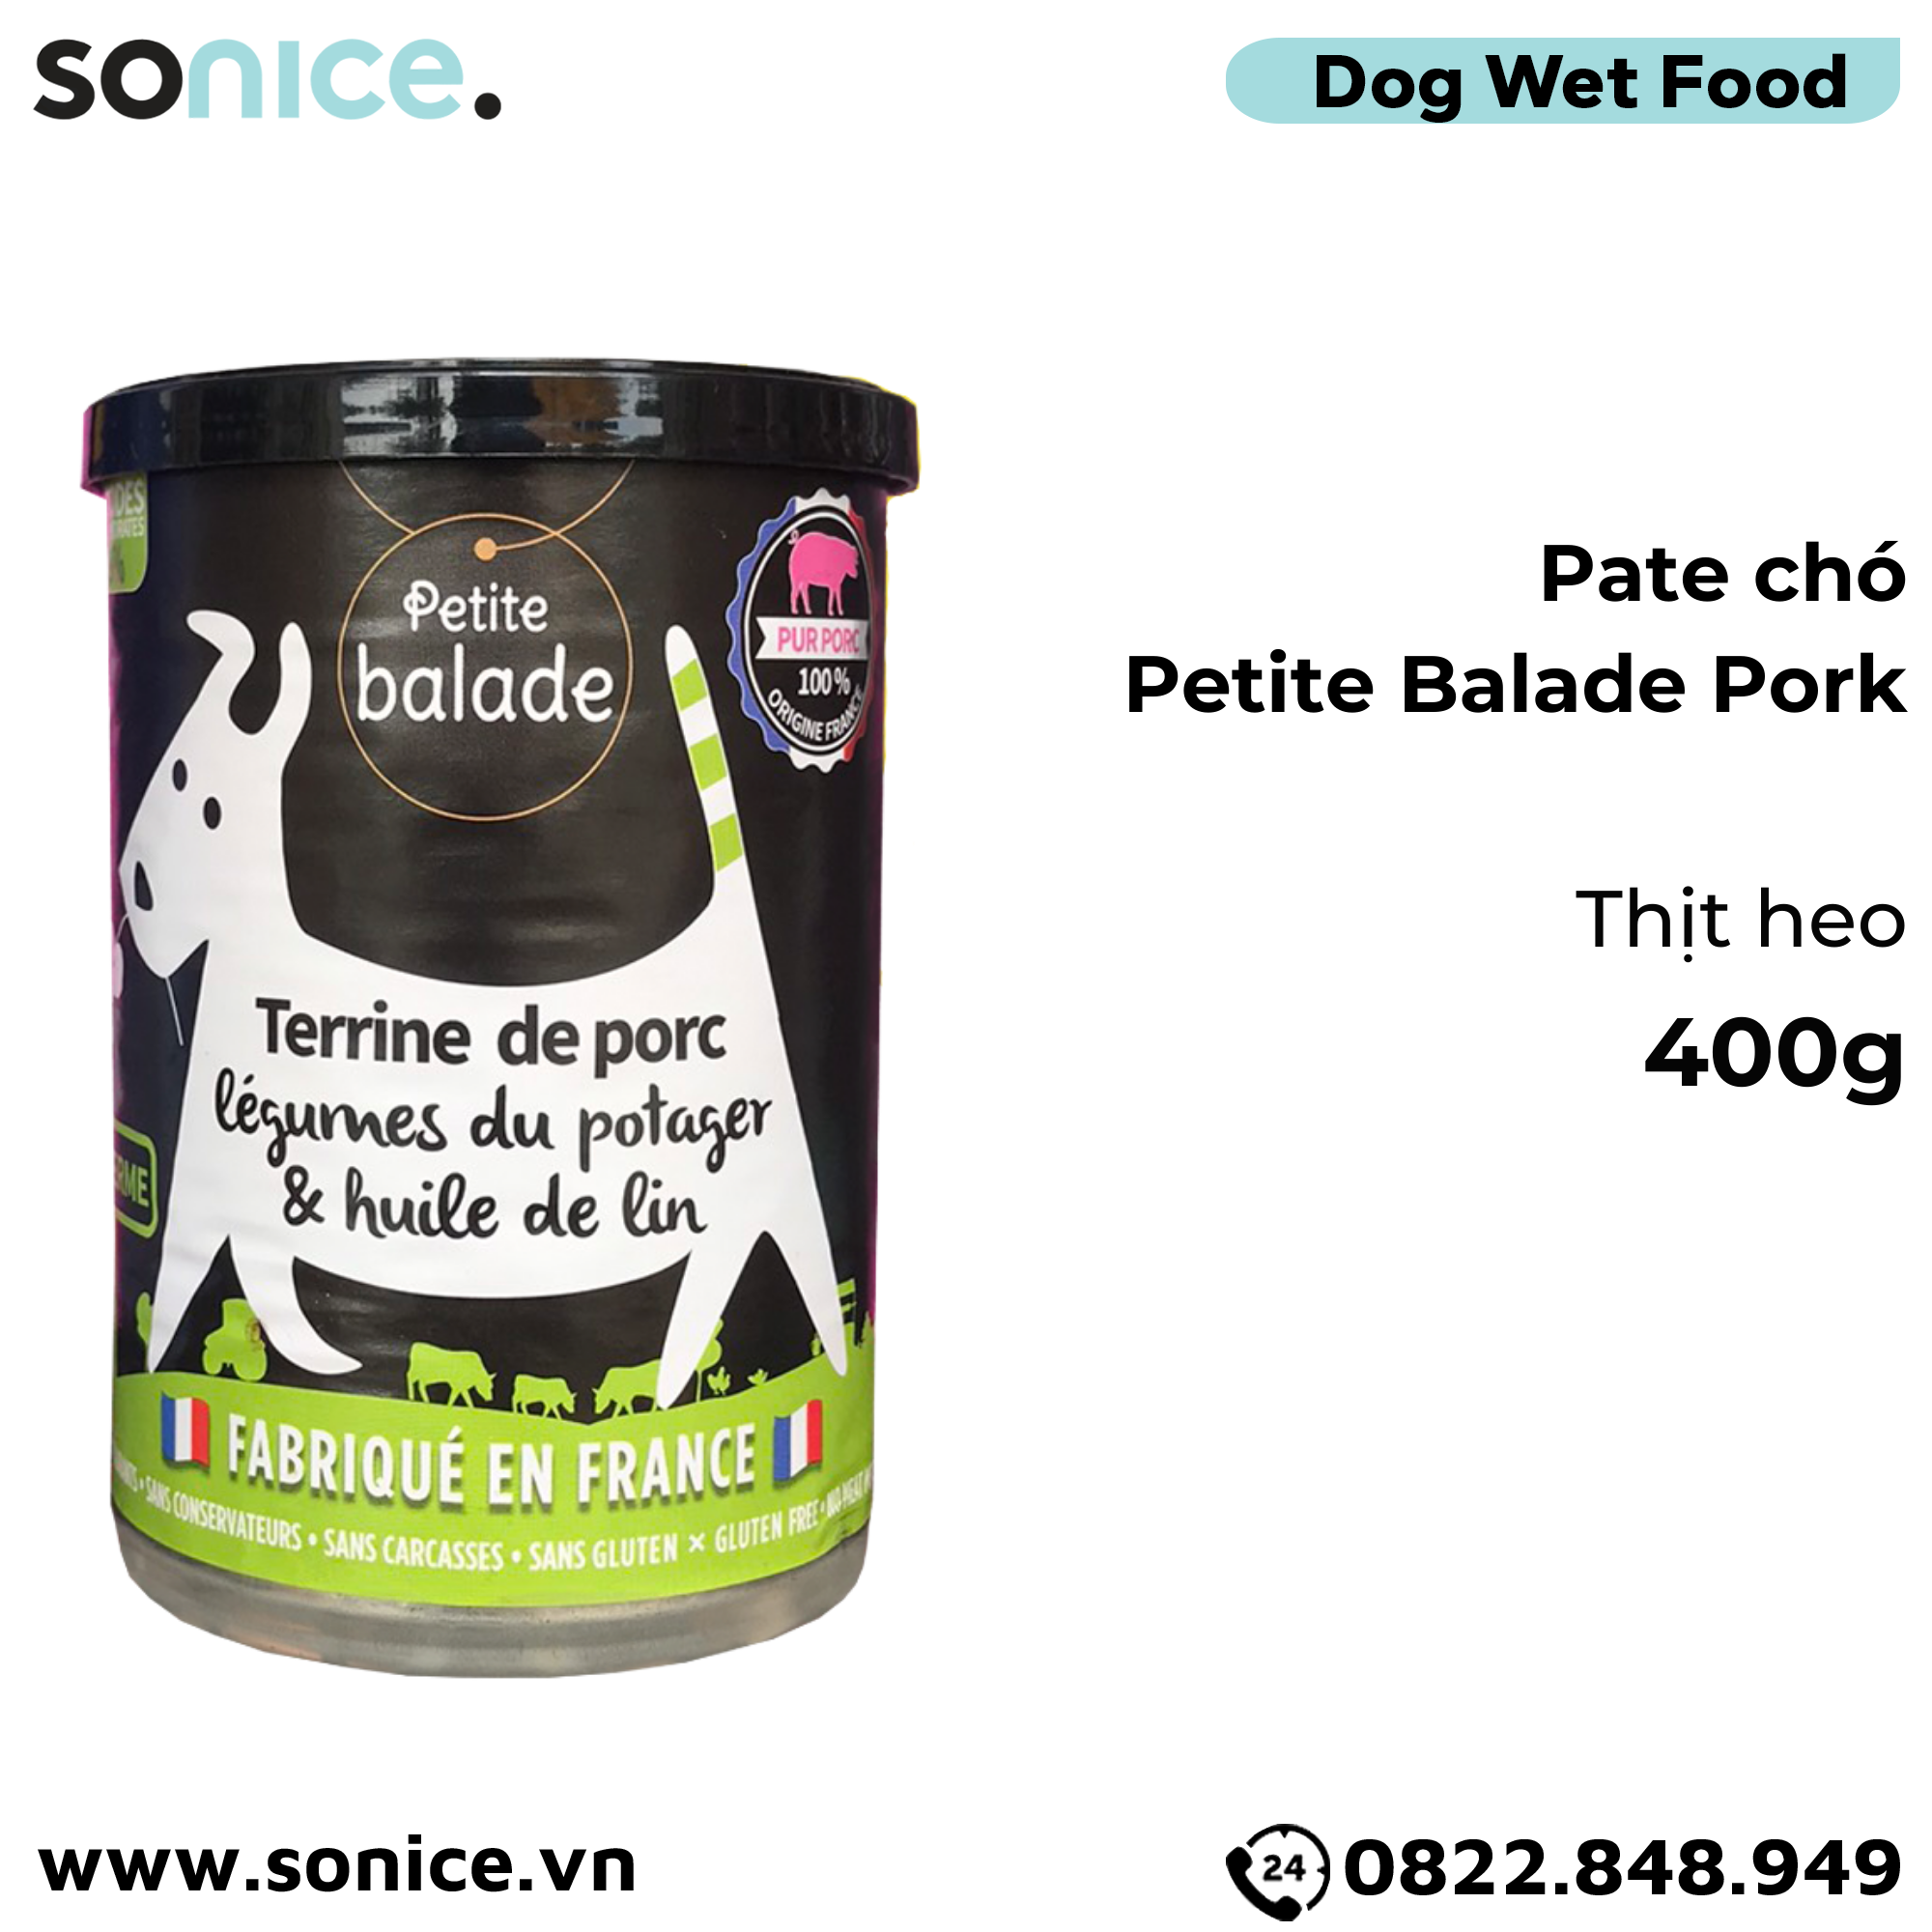  Combo Pate chó Petite Balade 400g mix 4 vị - Thịt heo, bò & gà, cừu, cá chày - 24 lon SONICE. 